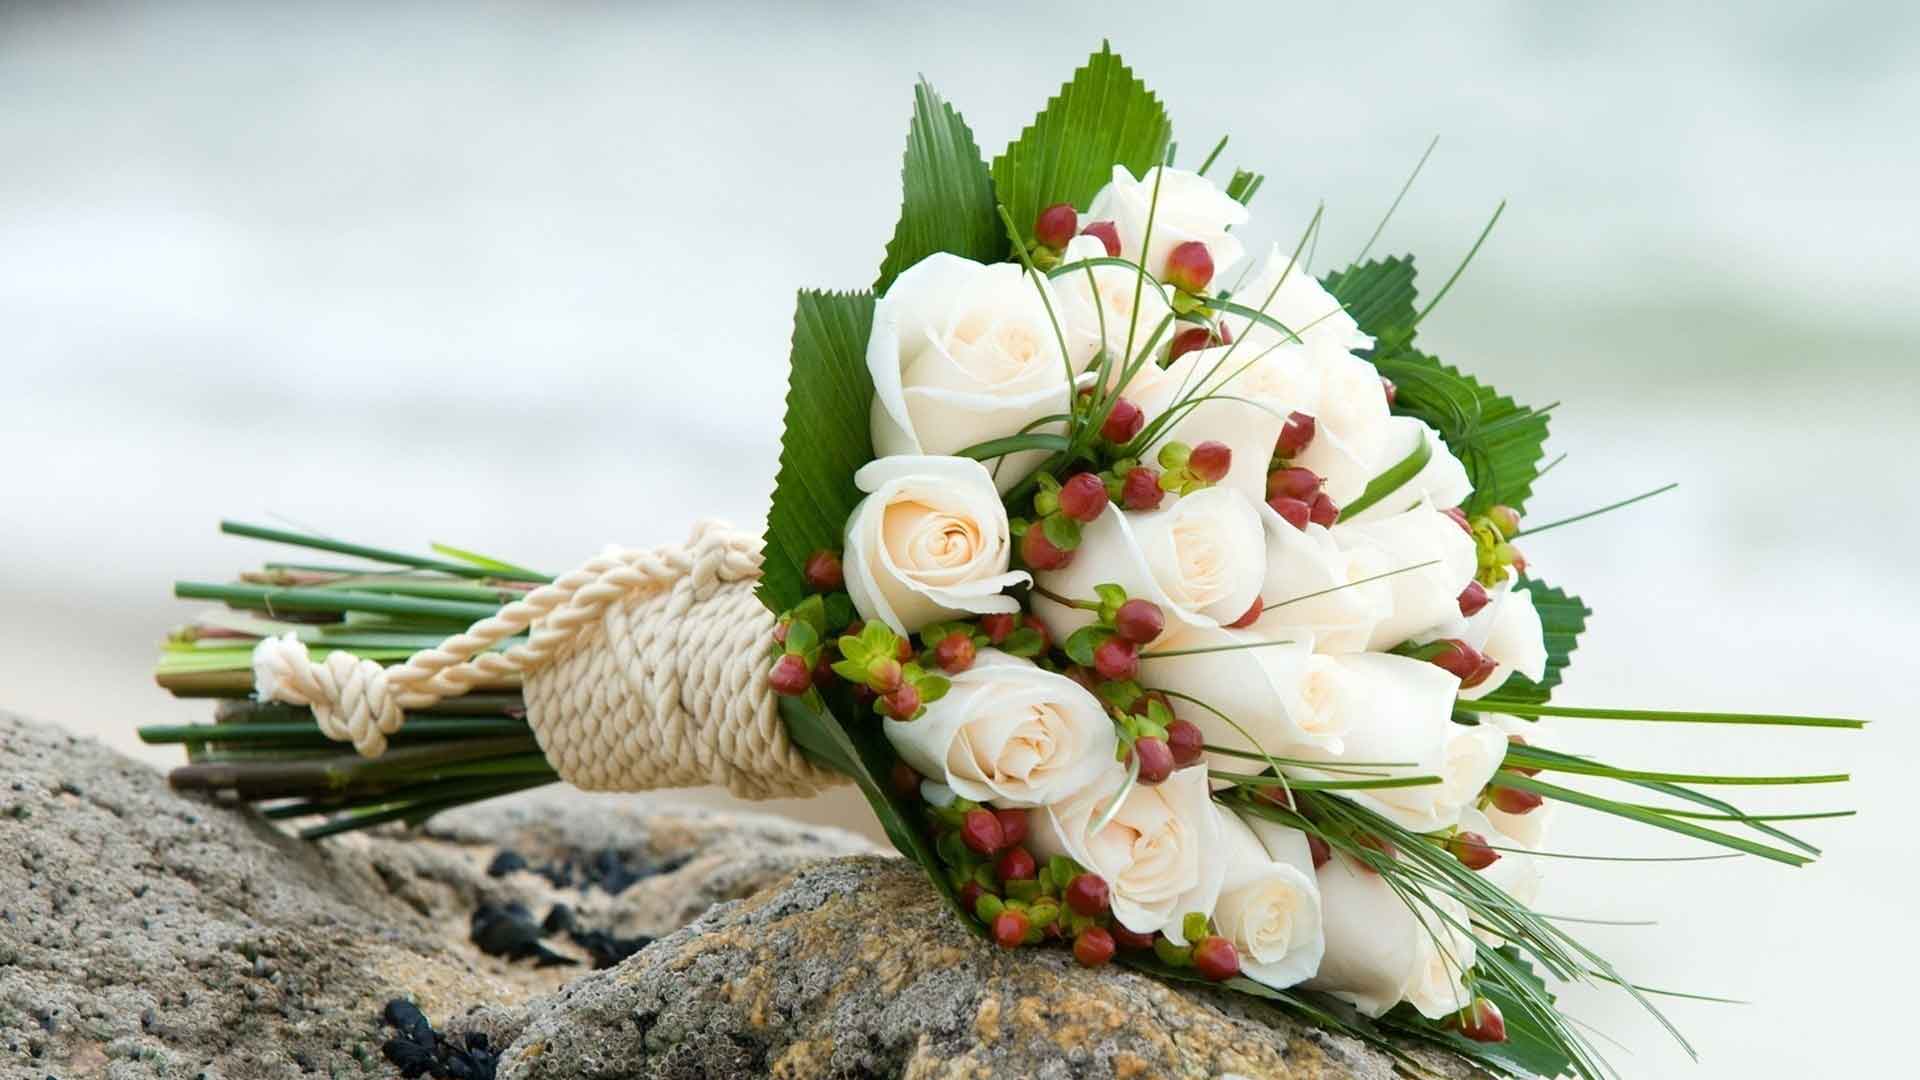 Hoa cưới cầm tay kết từ hoa hồng trắng và hoa chuỗi ngọc 